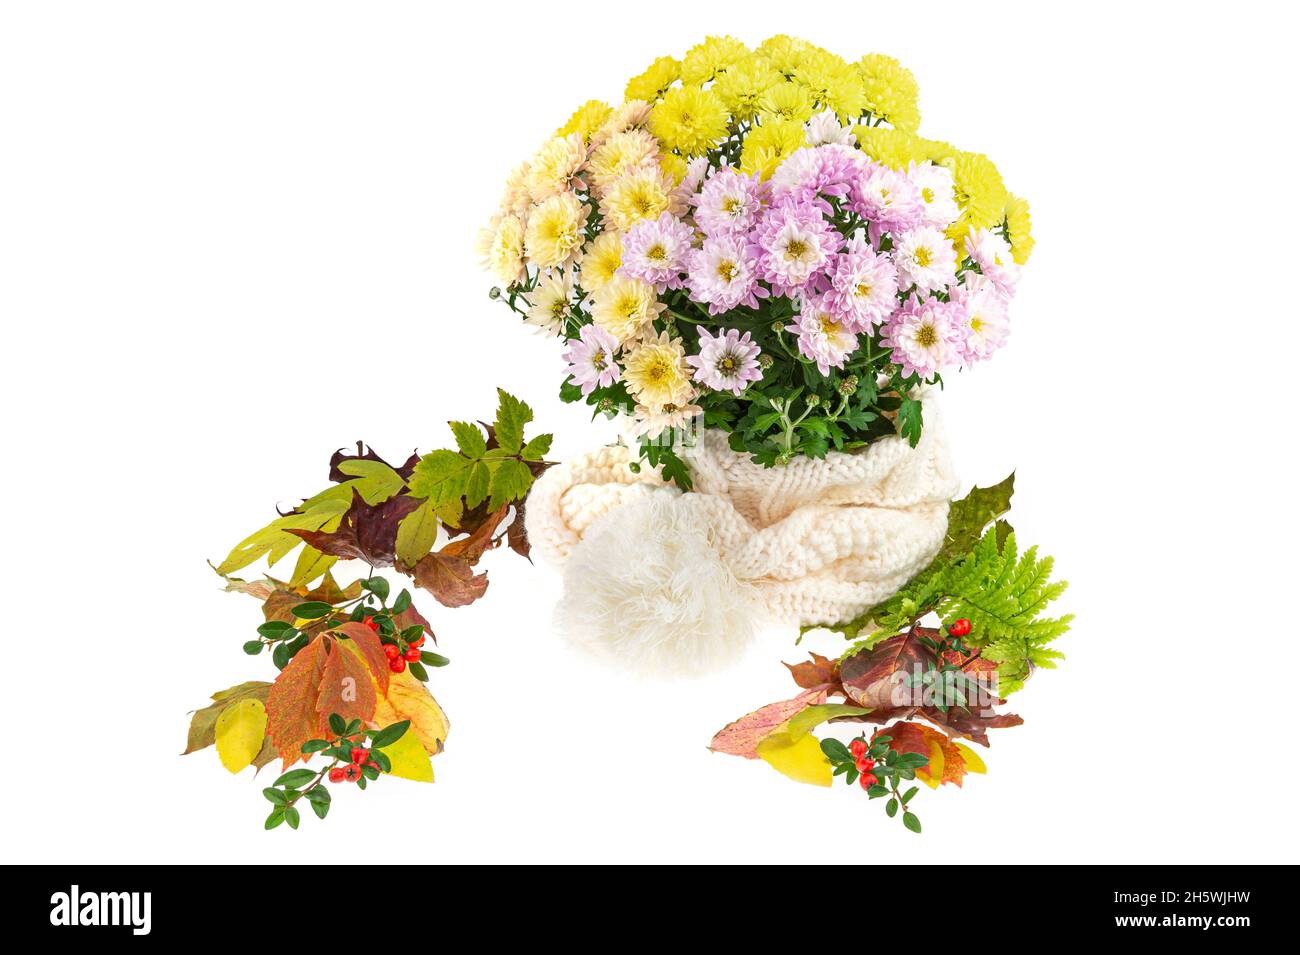 Diverses feuilles d'automne colorées sont autour d'un chrysanthème.Les fleurs sont dans un chapeau de pompon.Chrysanthème aux fleurs de différentes couleurs. Banque D'Images